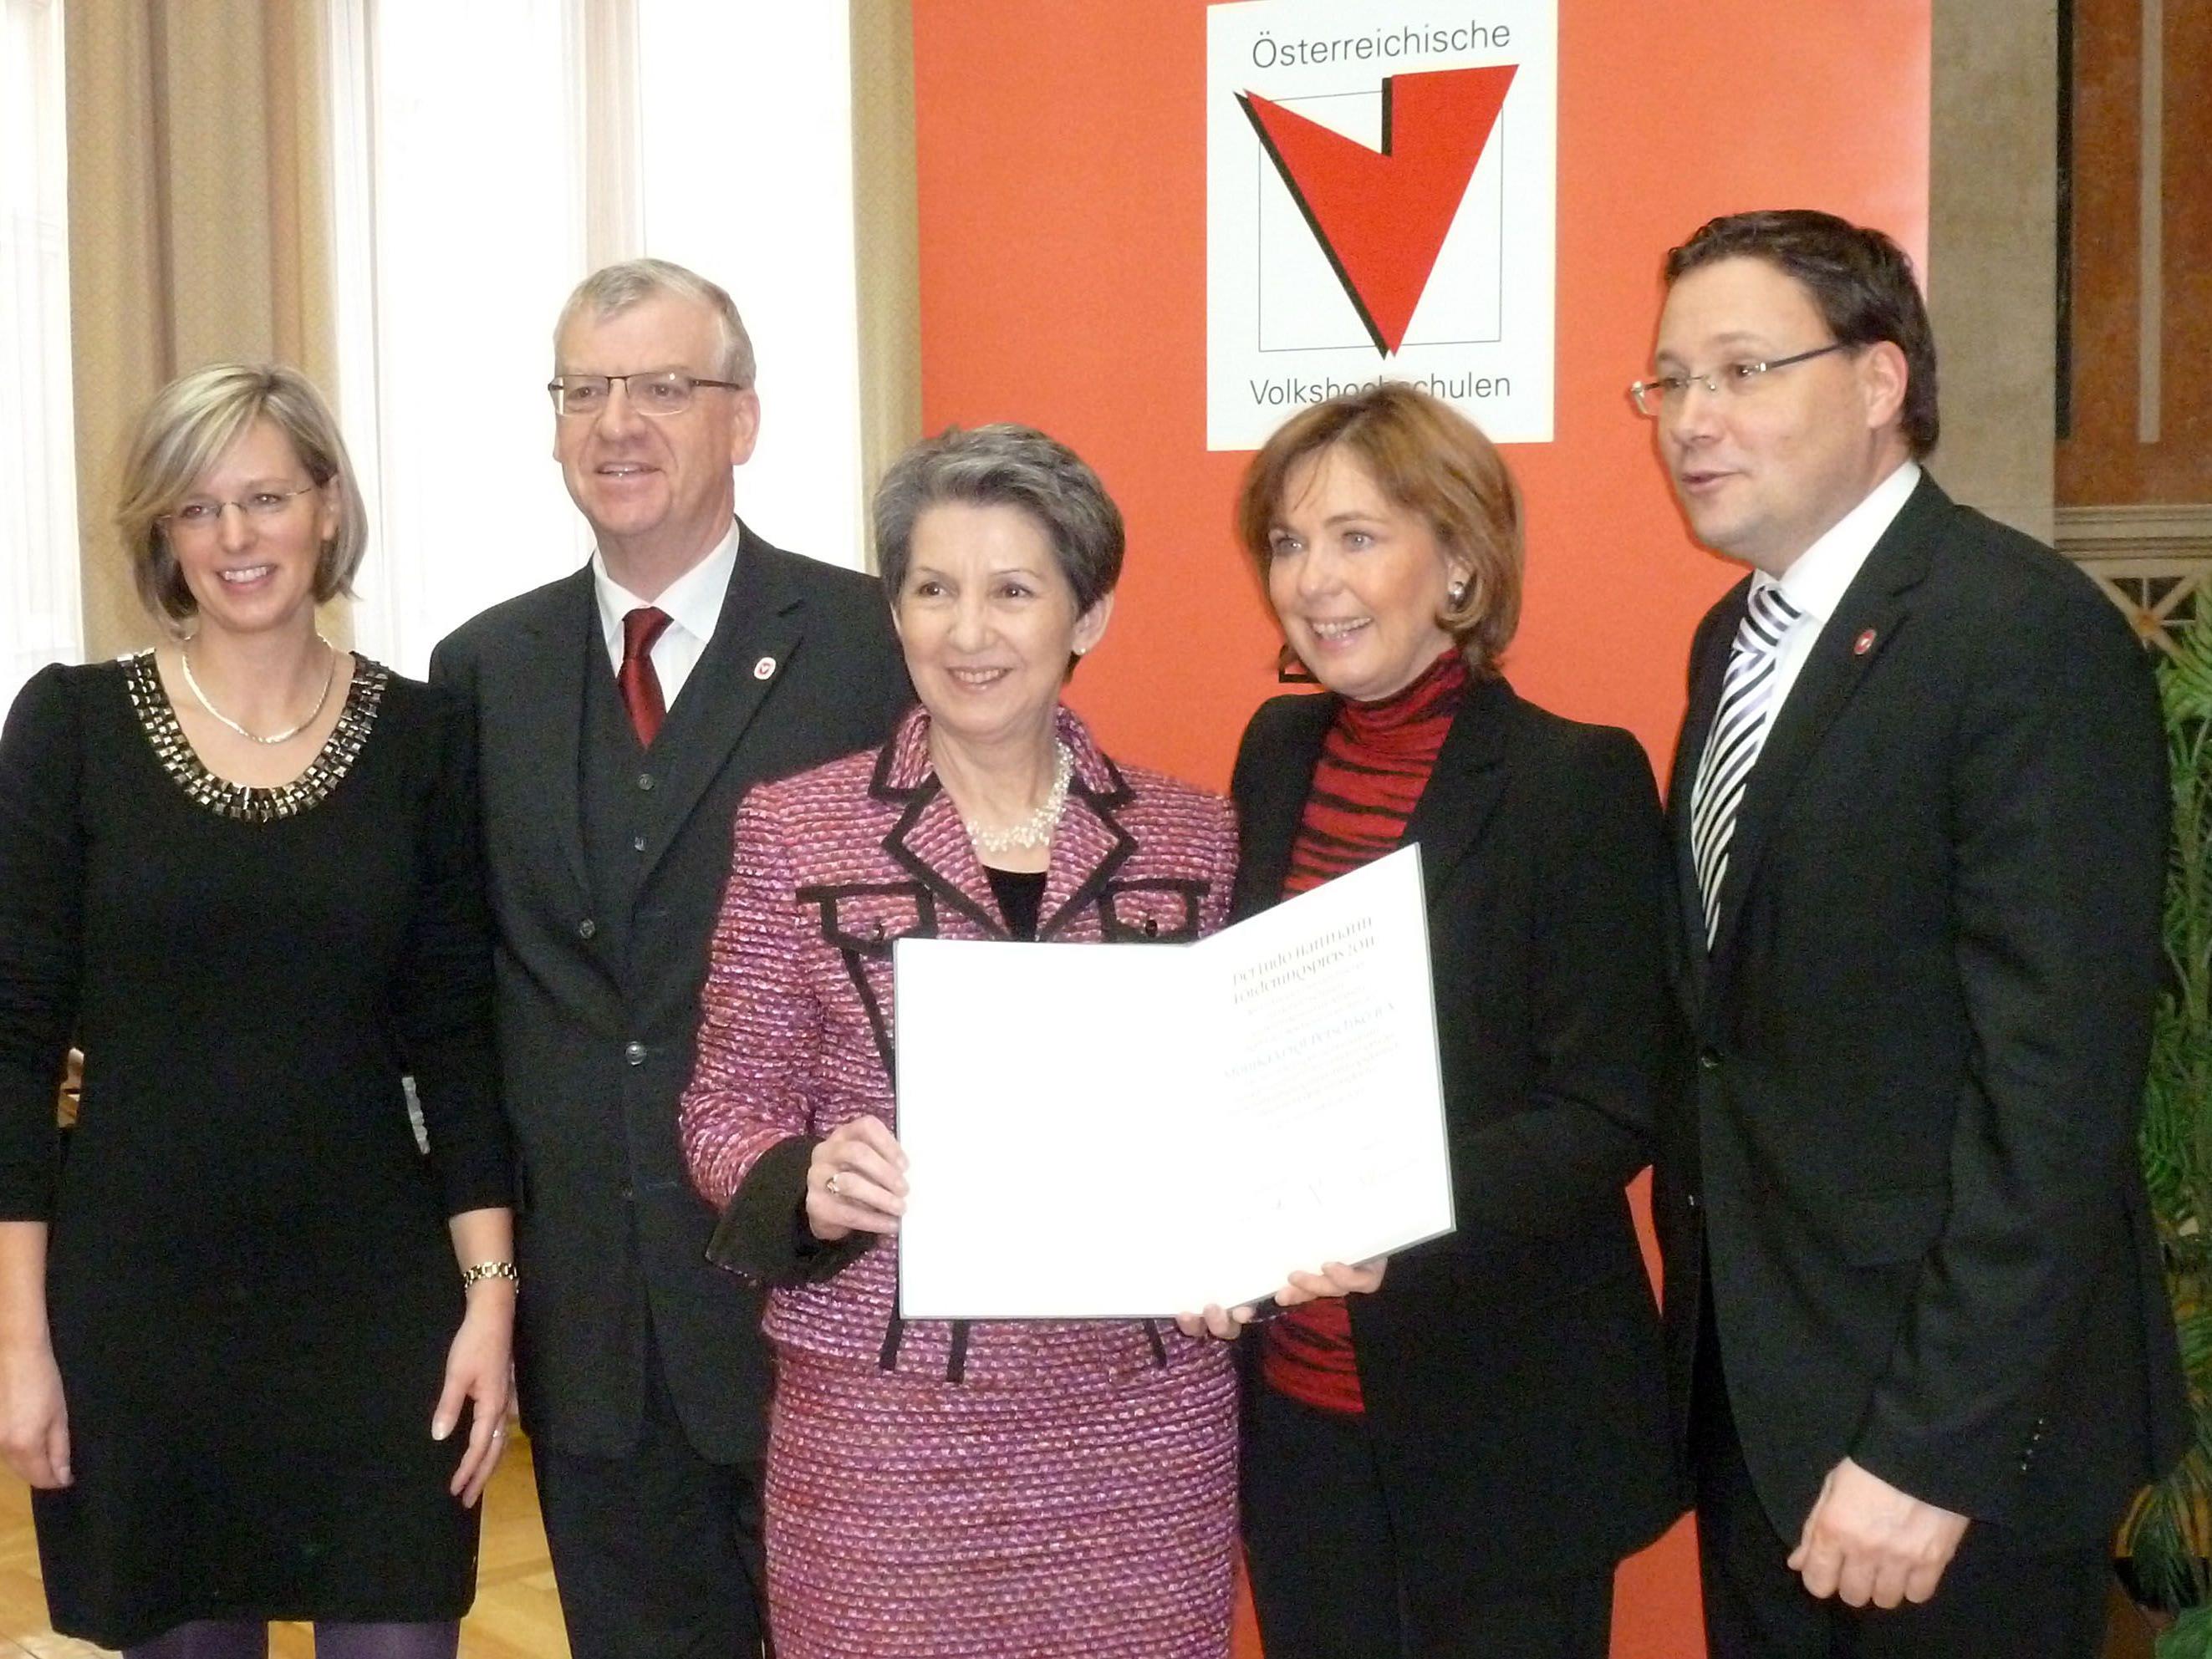 Nußbaumer, Türtscher, NR-Präsidentin Prammer, Preisträgerin Veigl-Petschko, Fischnaller.